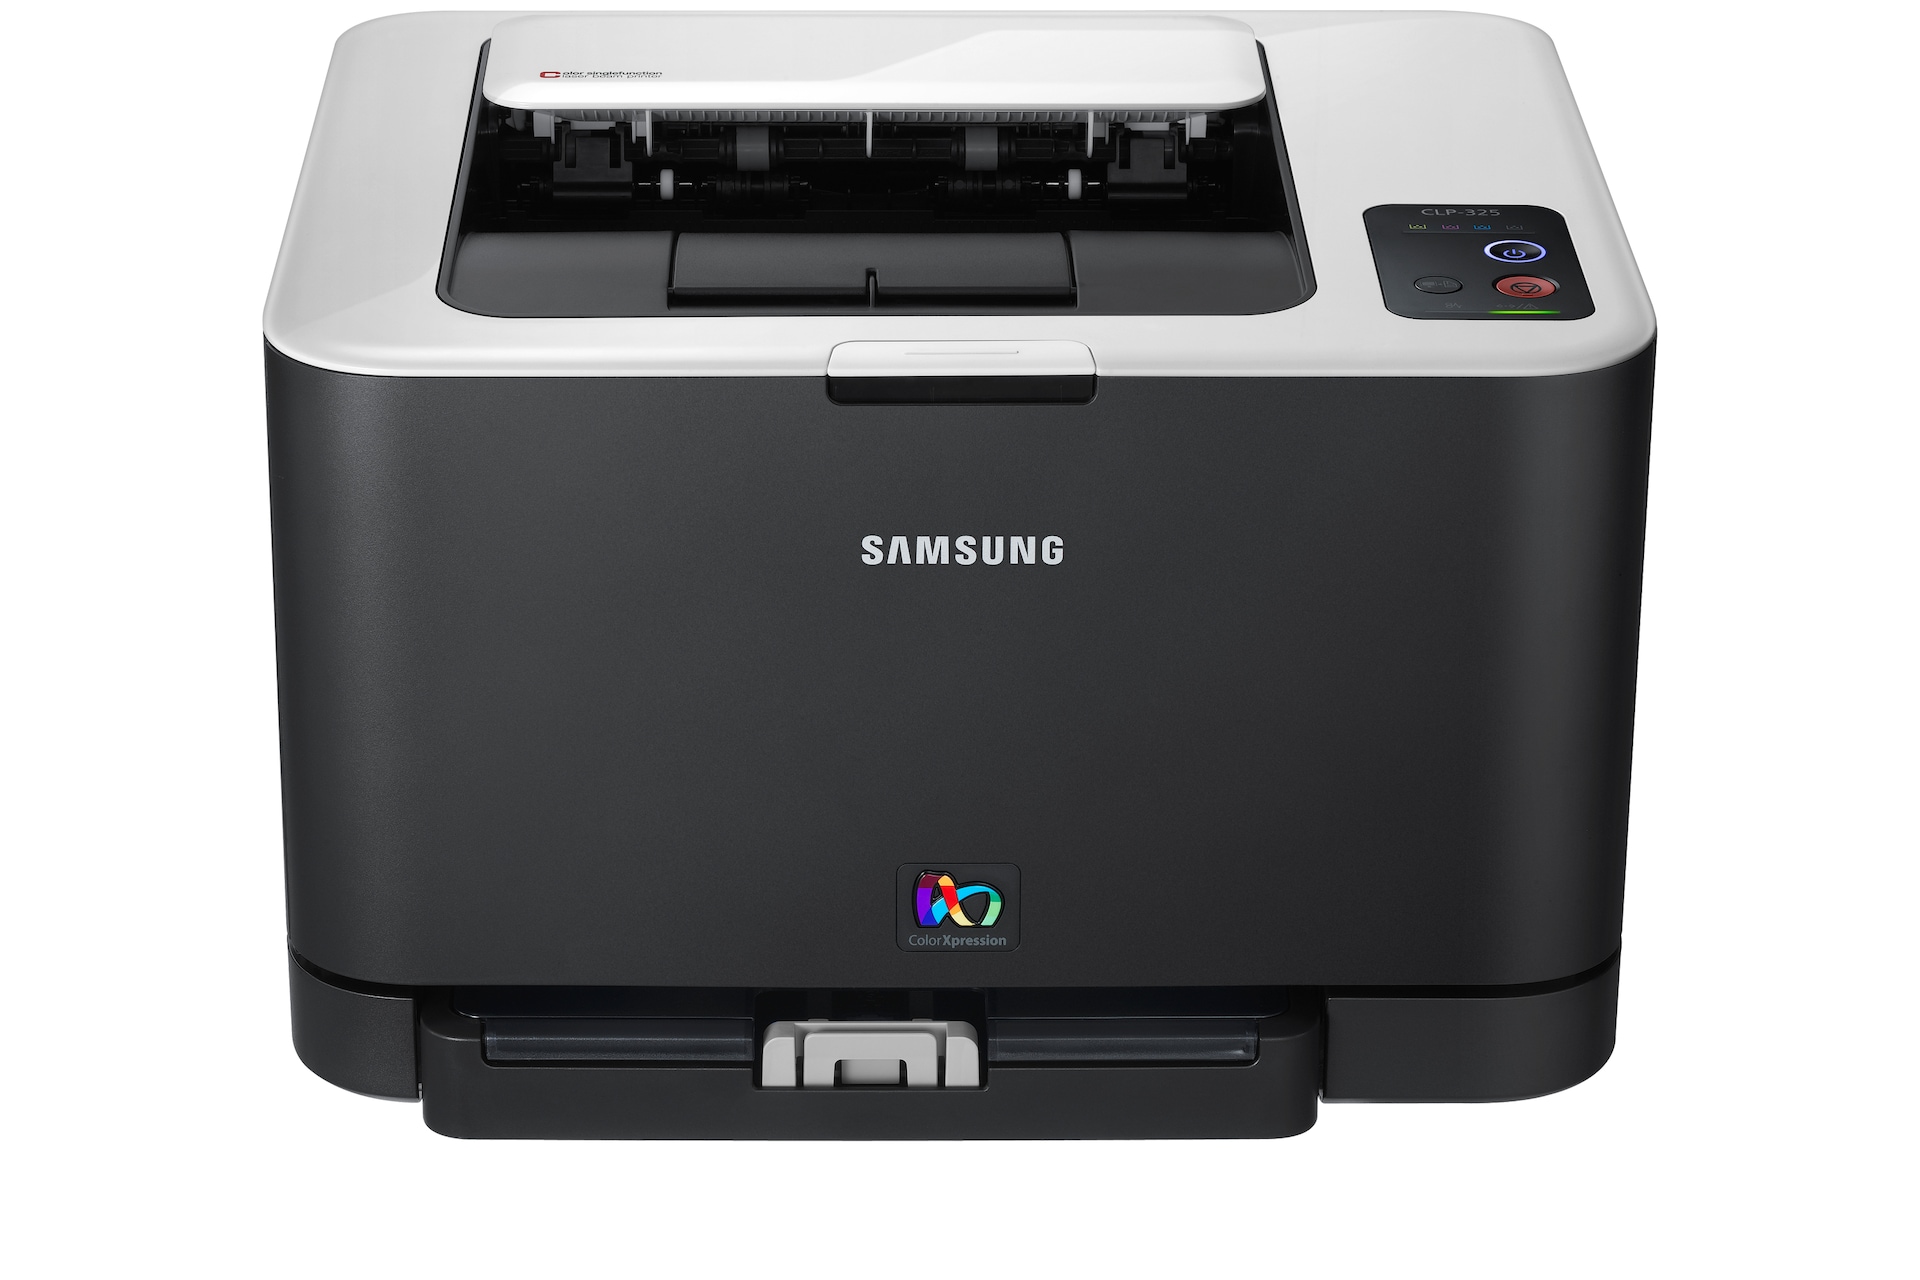 Samsung Laser Printer  on Clp 325w Color Laser Printer   Overzicht   Samsung